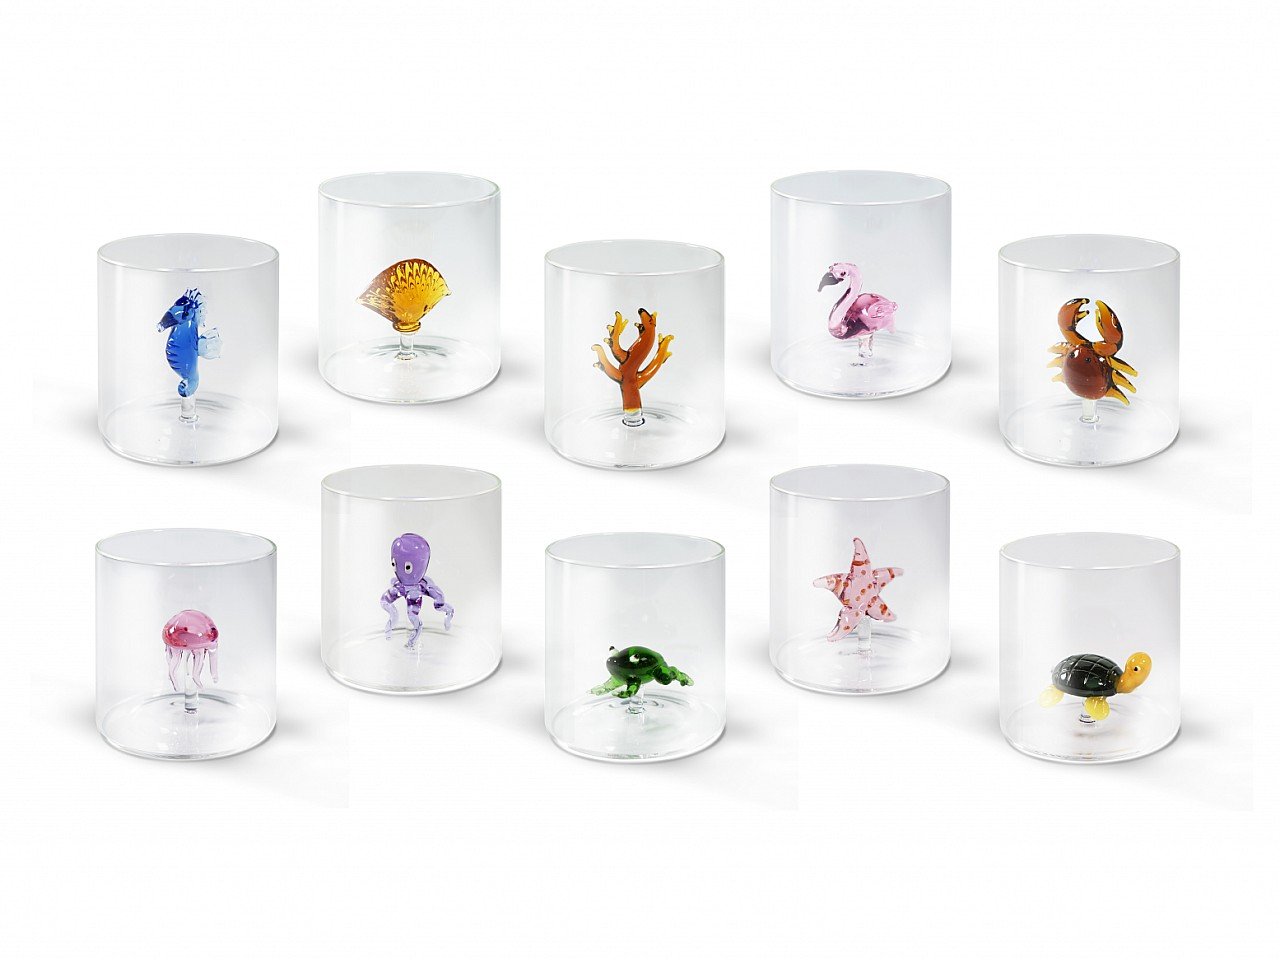 Bicchiere SEAHORSE Bicchiere in vetro borosilicato con cavalluccio in vetro colorato all’interno 250 ml Ø 8 x h 8 Capacità Misure